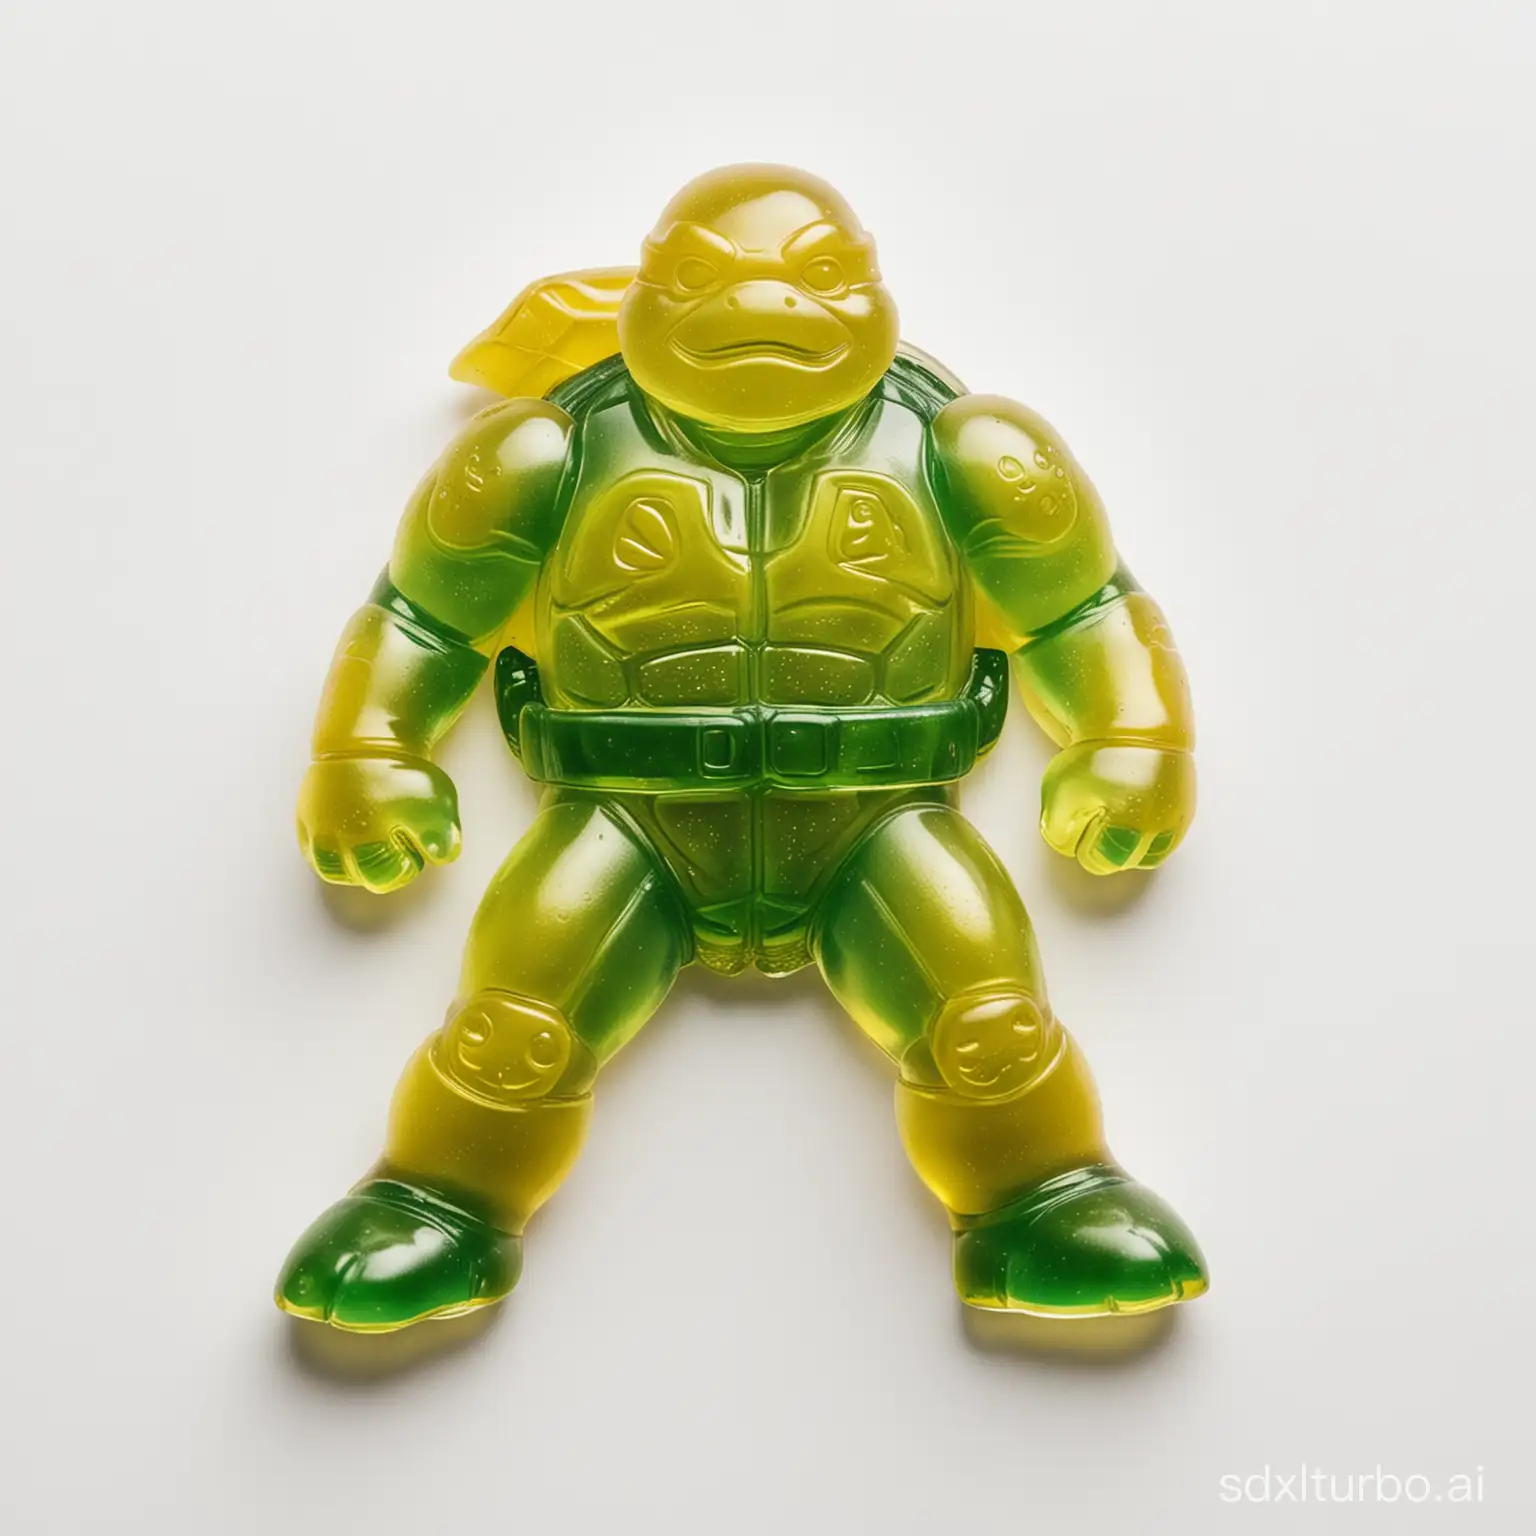 一个忍者神龟形状的软糖 晶莹剔透 包含主色调绿色和黄色 俯视角度拍摄 纯白色背景